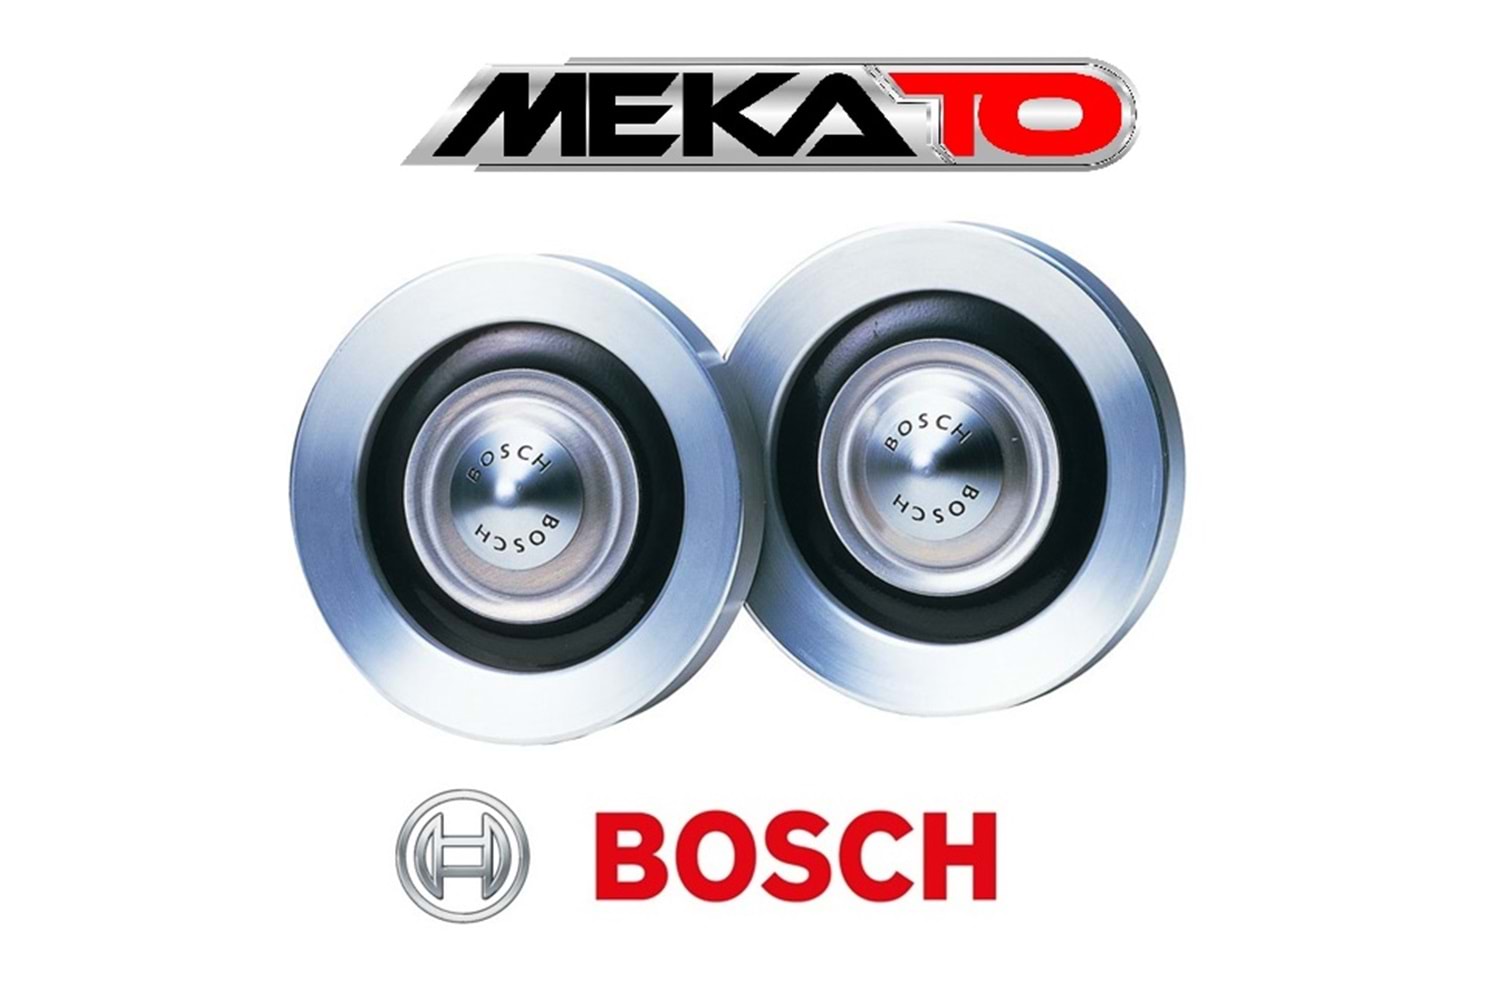 Bosch 911 Büyük Kafa 2'li Korna Seti 300/375Hz 12V